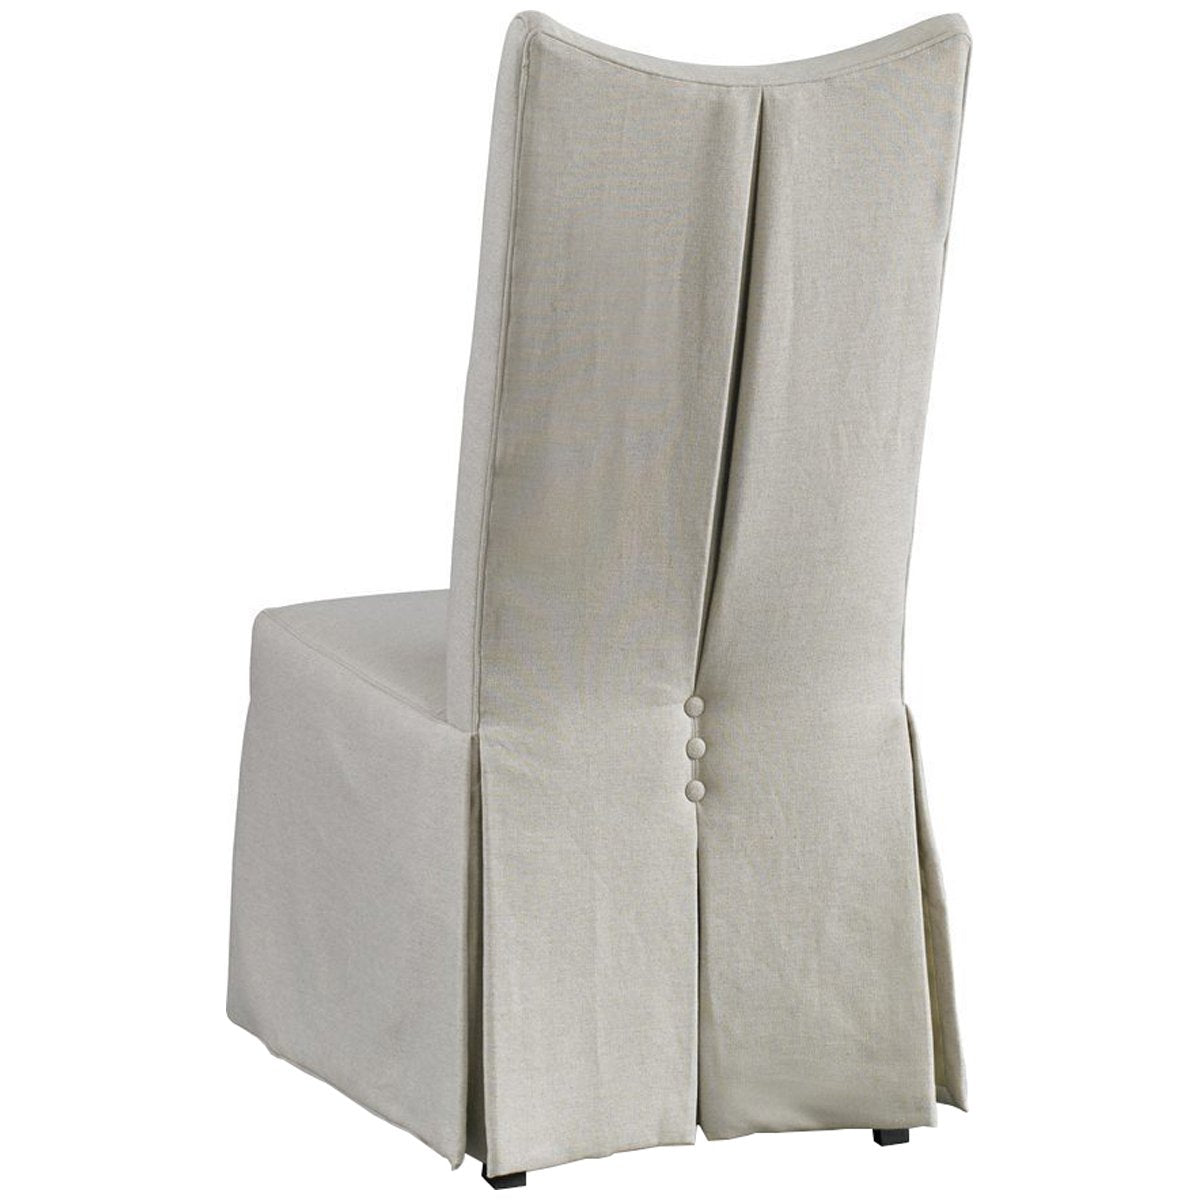 Hickory White Laurel Glynn Linen White Chair